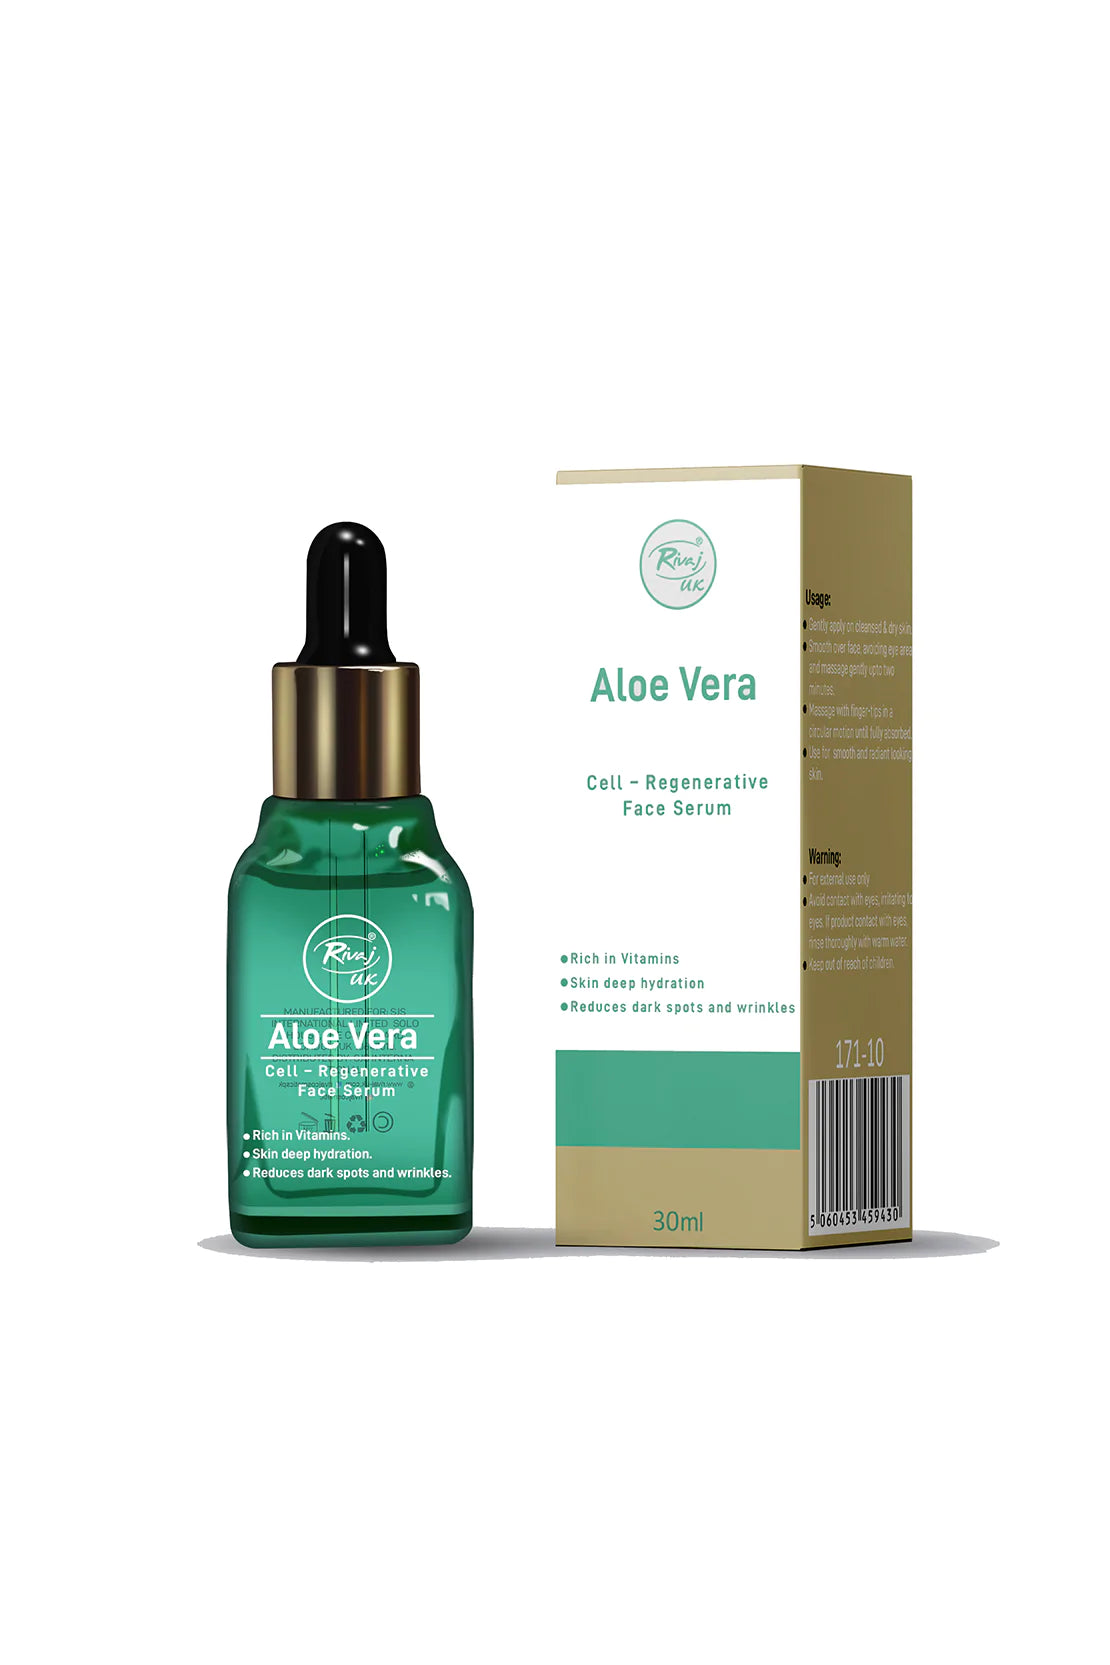 Rivaj Uk Aloe Vera Cell - Regenerative Face Serum - 30ml